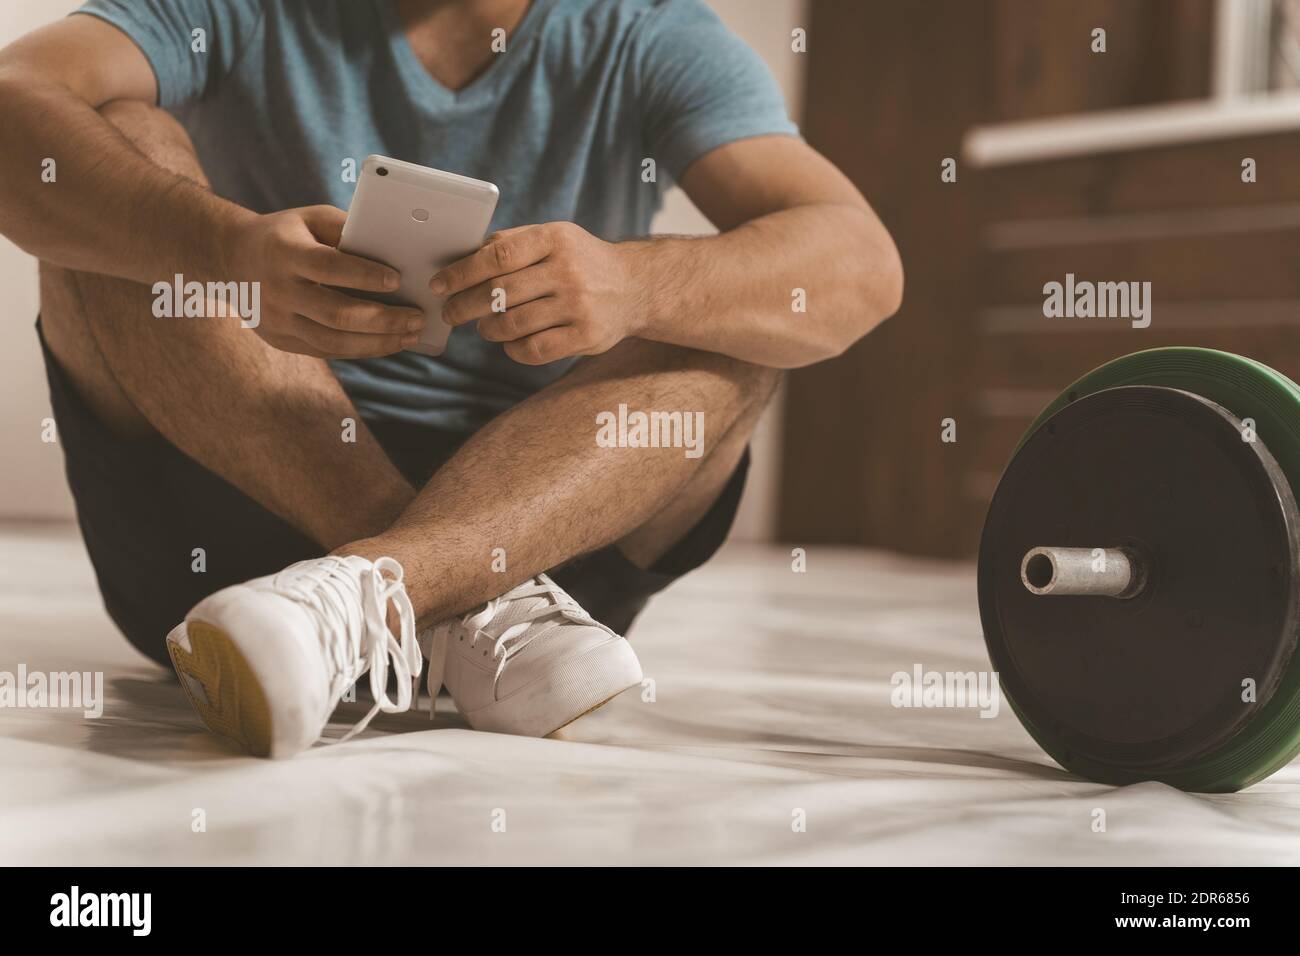 Keine Gesichtsaufnahme eines Fitnesstrainers, der online sucht oder auf dem Boden mit Smartphone sitzt, schwarze und grüne Fitness-Langhantel, Geräte Stockfoto